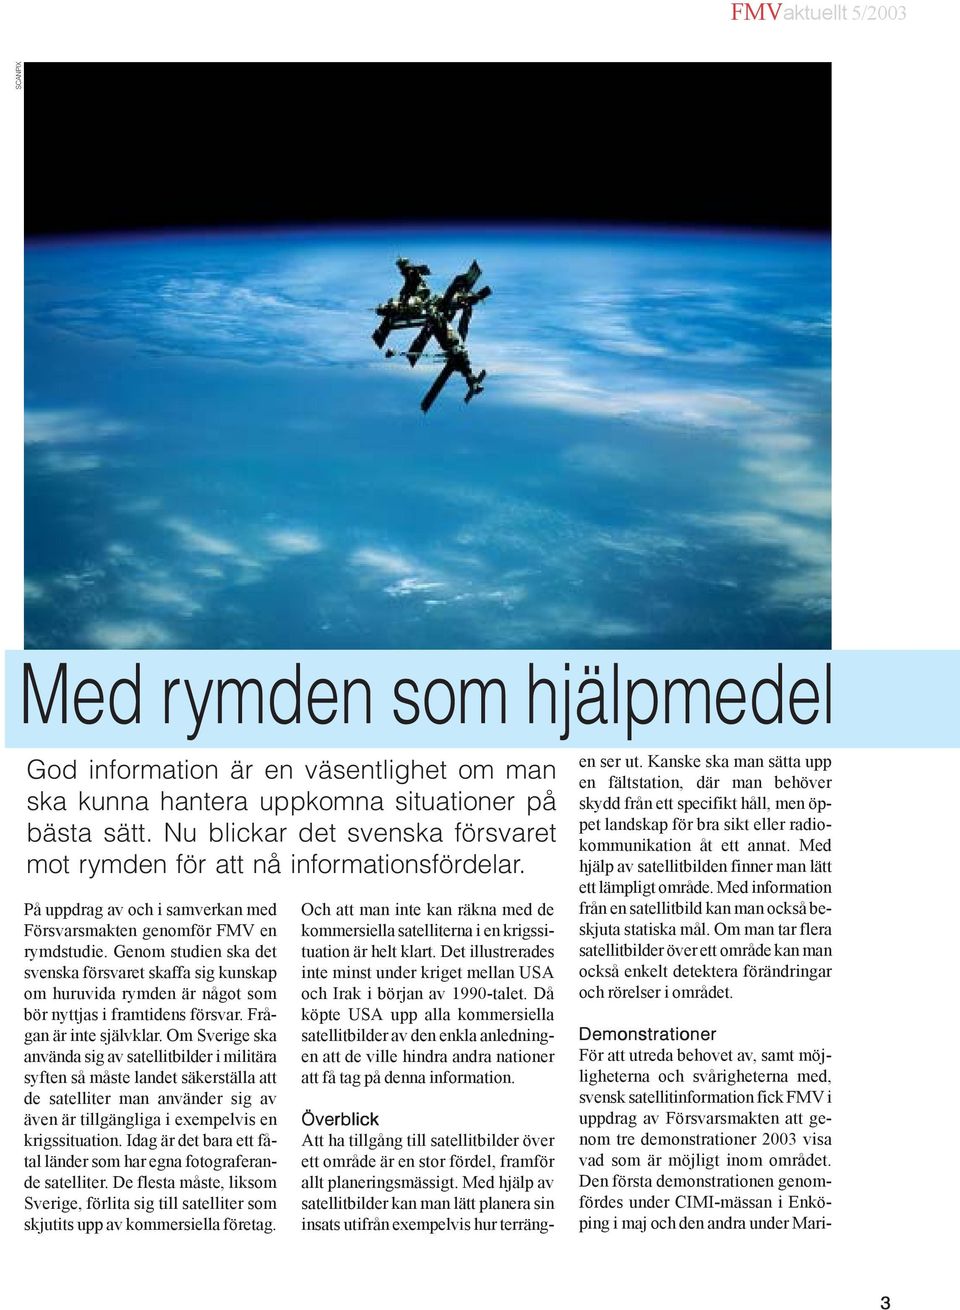 Genom studien ska det svenska försvaret skaffa sig kunskap om huruvida rymden är något som bör nyttjas i framtidens försvar. Frågan är inte självklar.